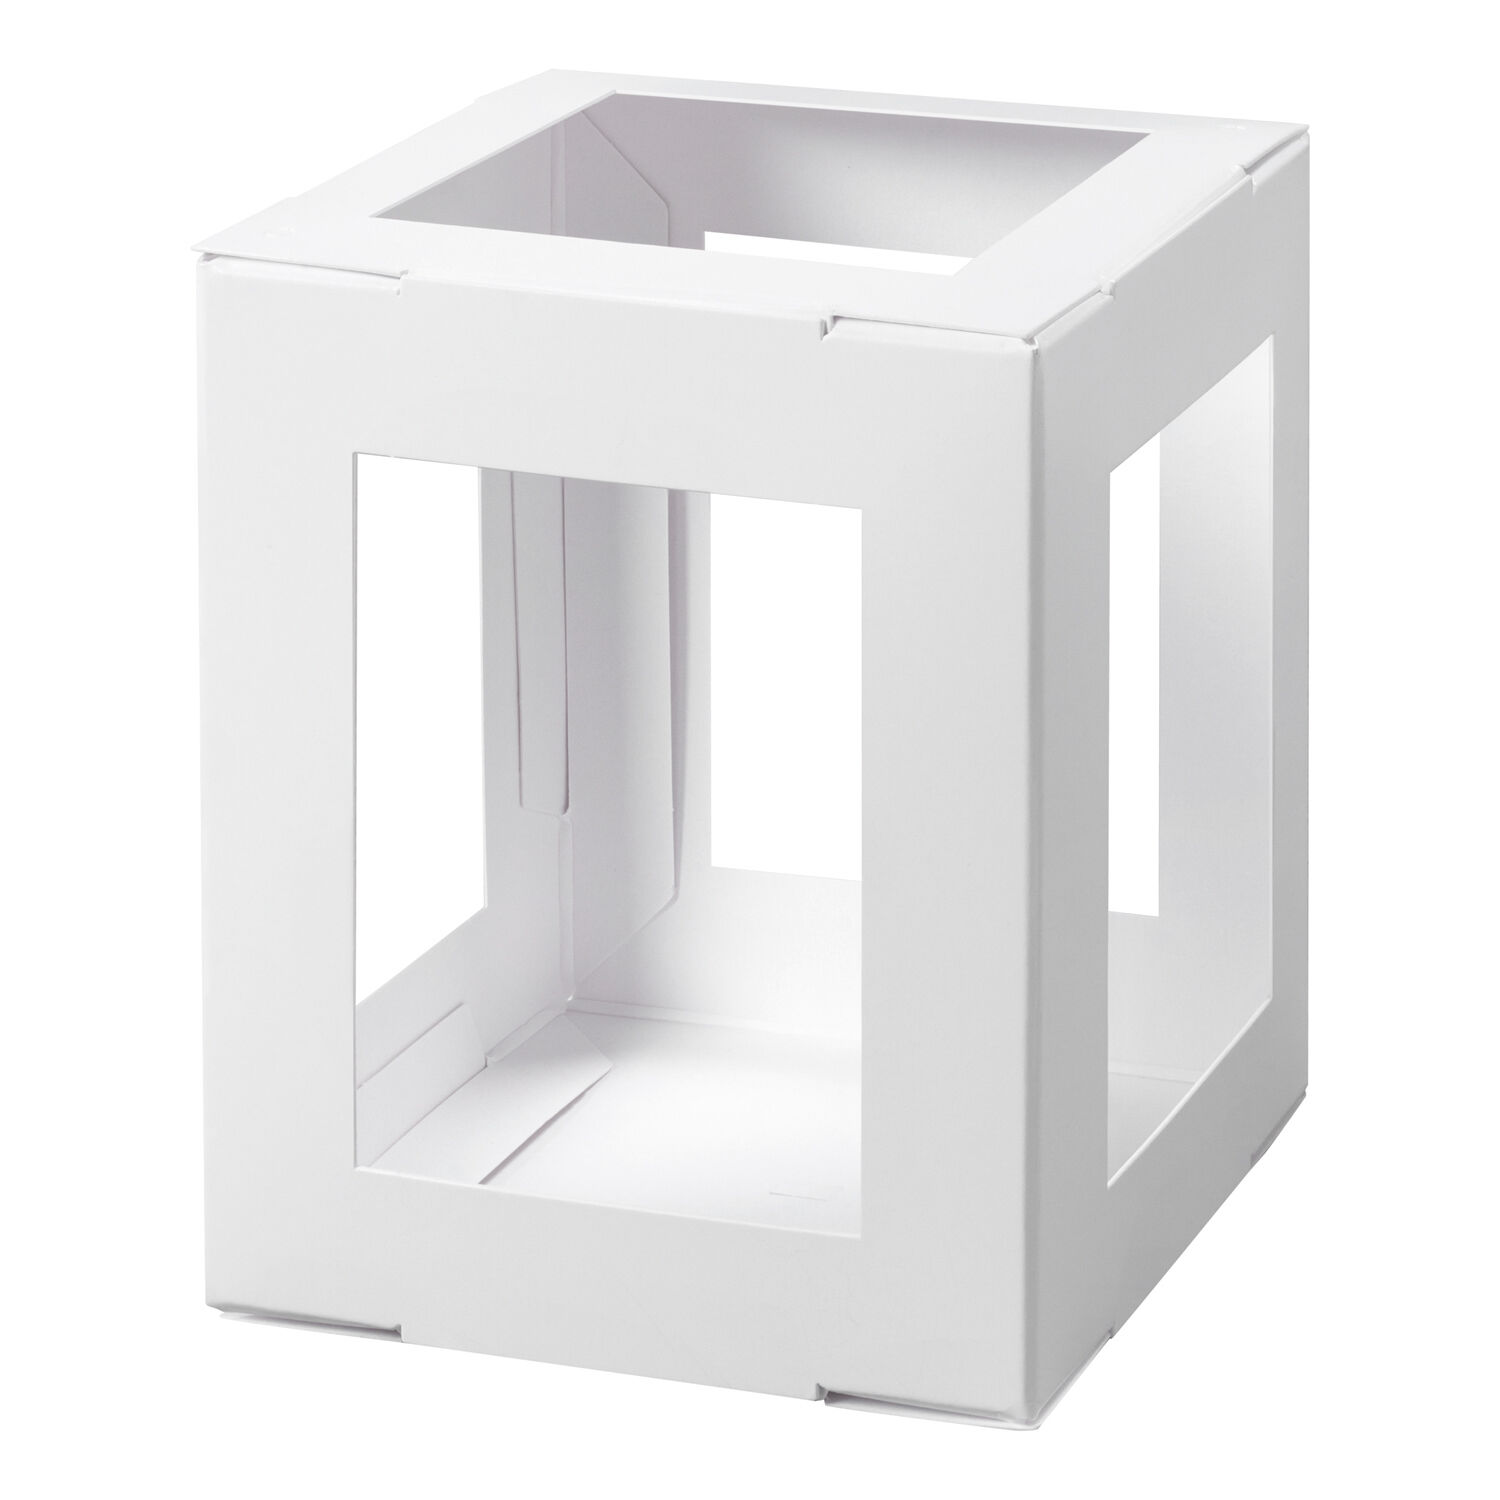 NEU Minilaternen Rohlinge zum Stecken, 400g/m², 10x10x12cm, 5 Stück, Weiß Bild 2